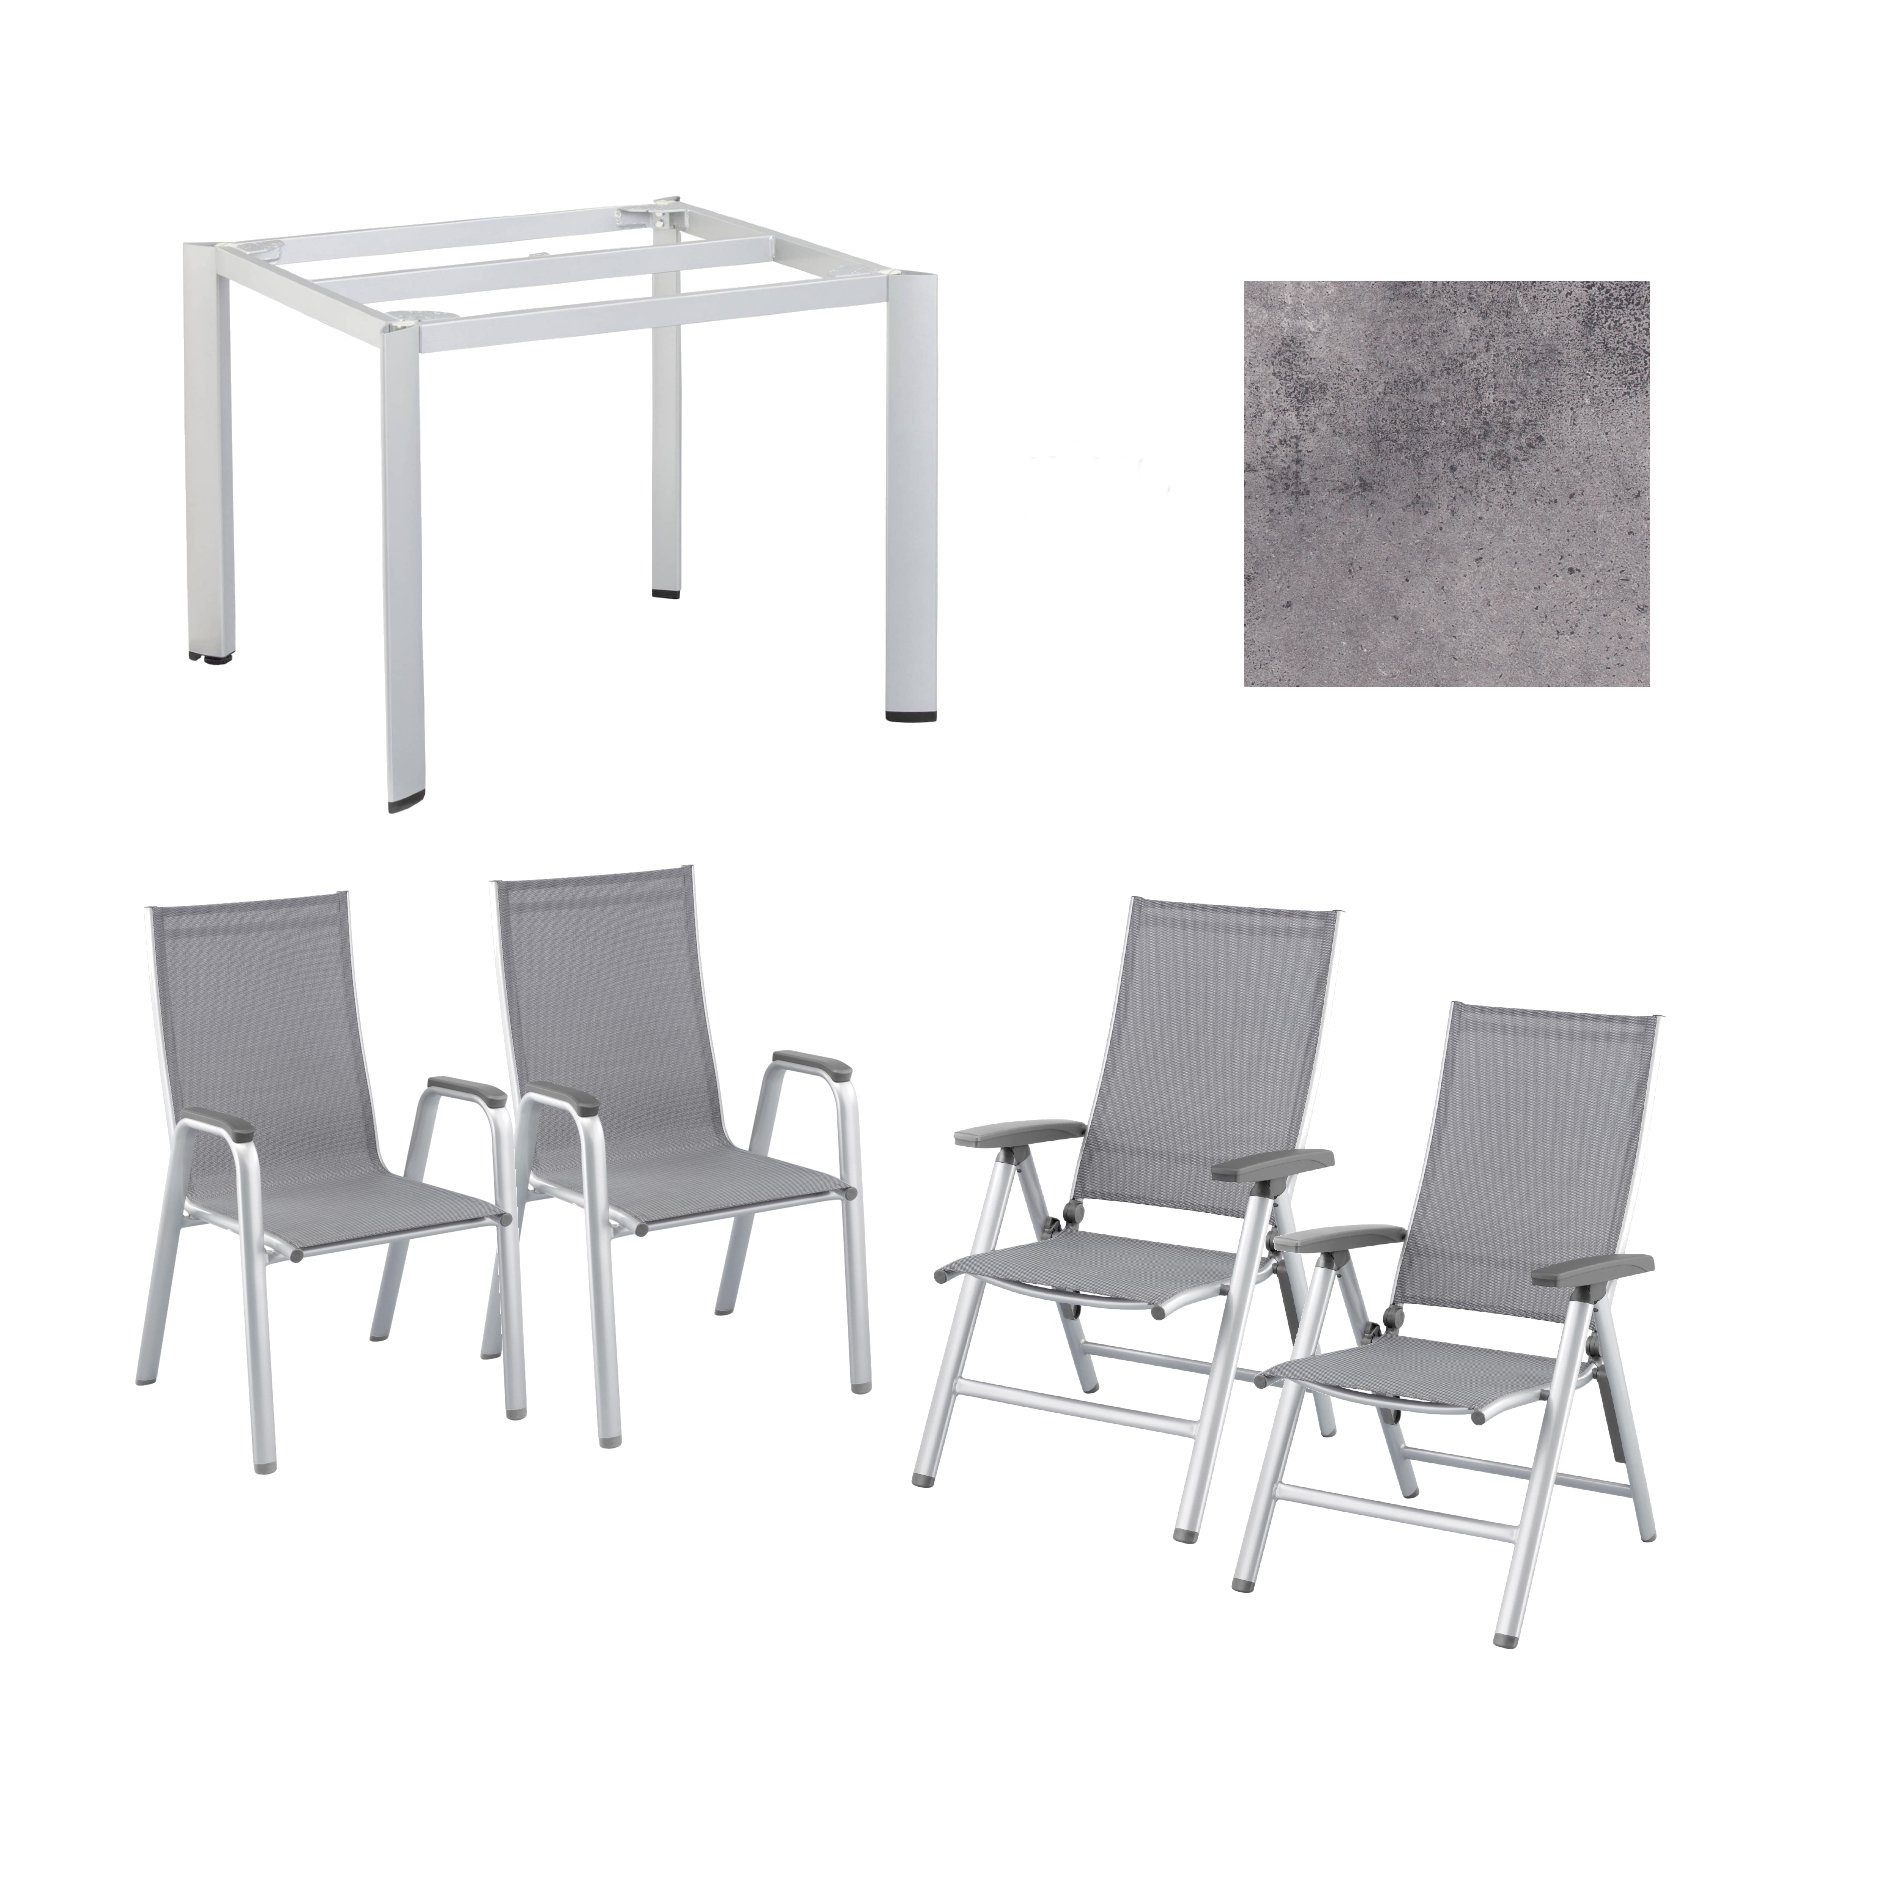 Kettler Gartenmöbel-Set mit "Cirrus" Klapp- und Stapelsessel und "Edge" Gartentisch, Gestelle Aluminium silber, Sitz Textilgewebe anthrazit-grau, Tischplatte HPL anthrazit